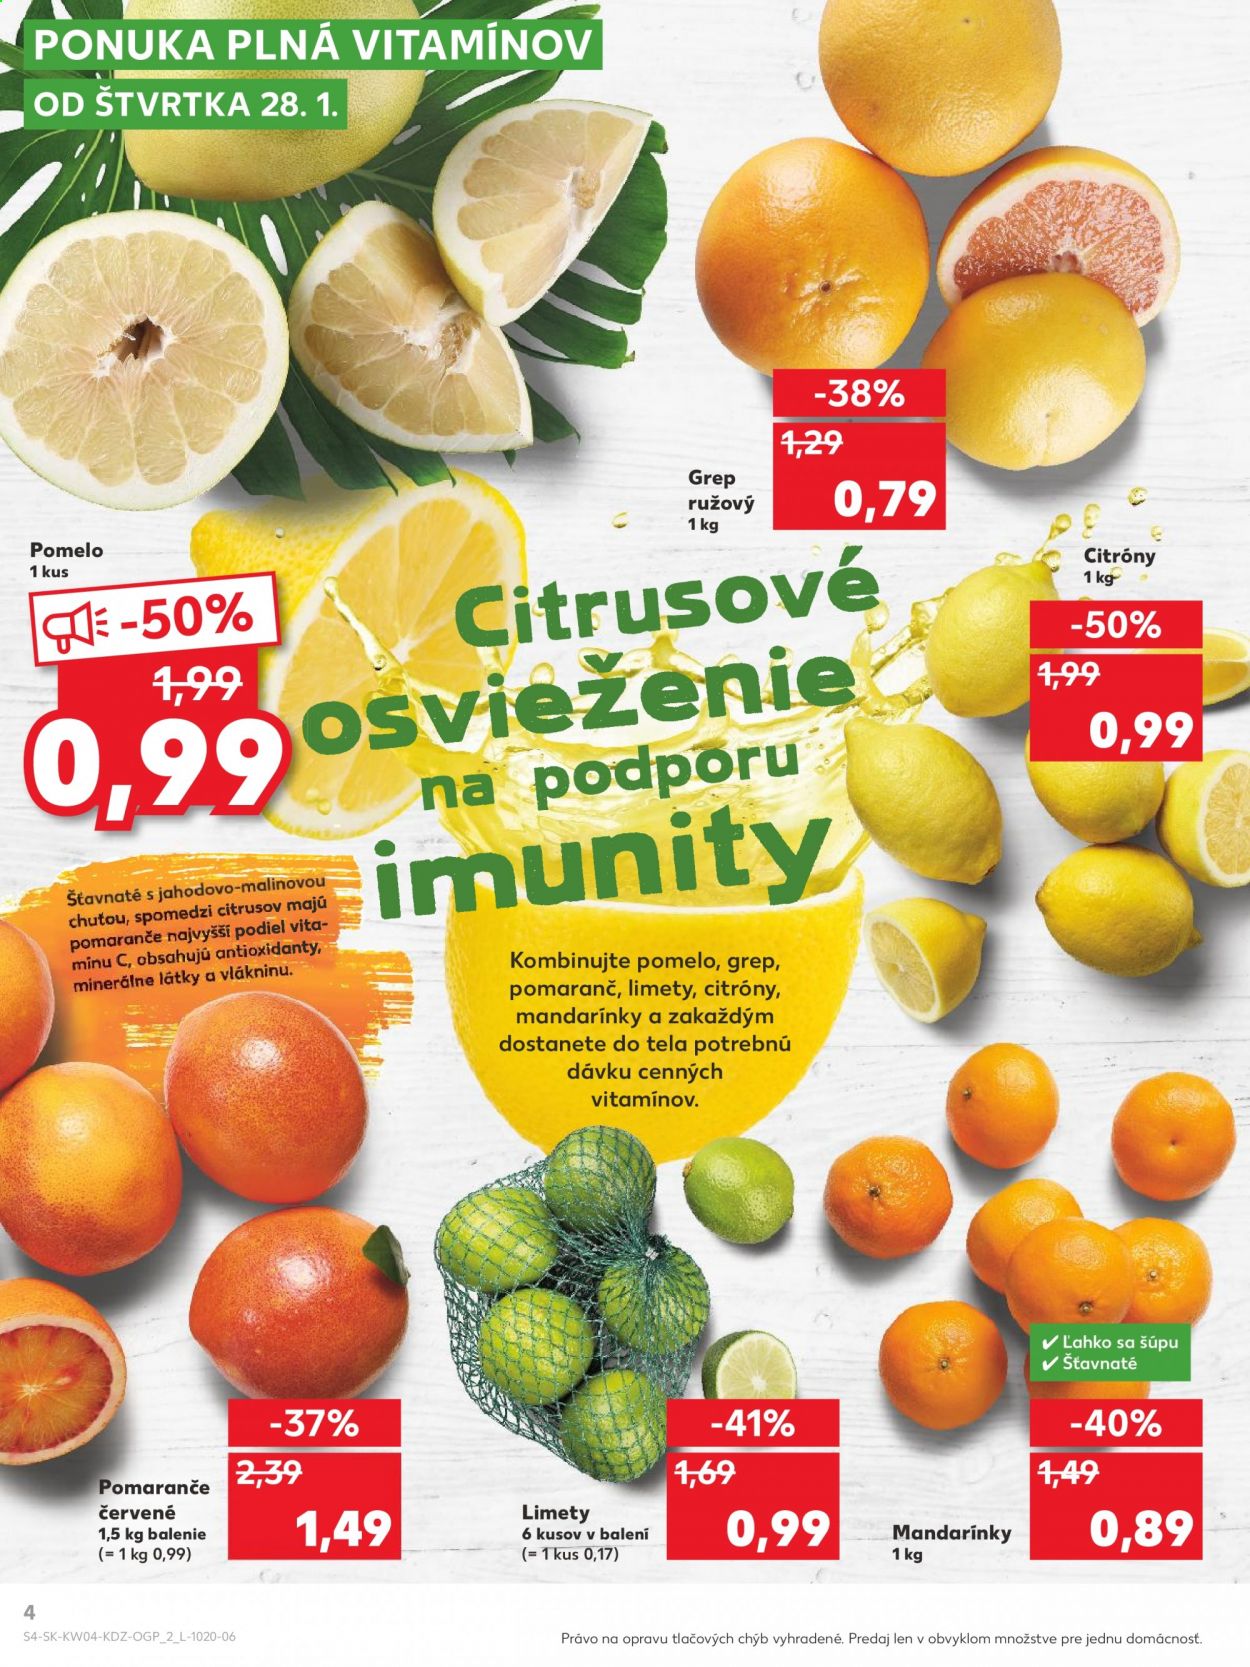 thumbnail - Leták Kaufland - 28.1.2021 - 3.2.2021 - Produkty v akcii - citróny, limeta, mandarínky, pomaranče, pomelo, grep. Strana 4.